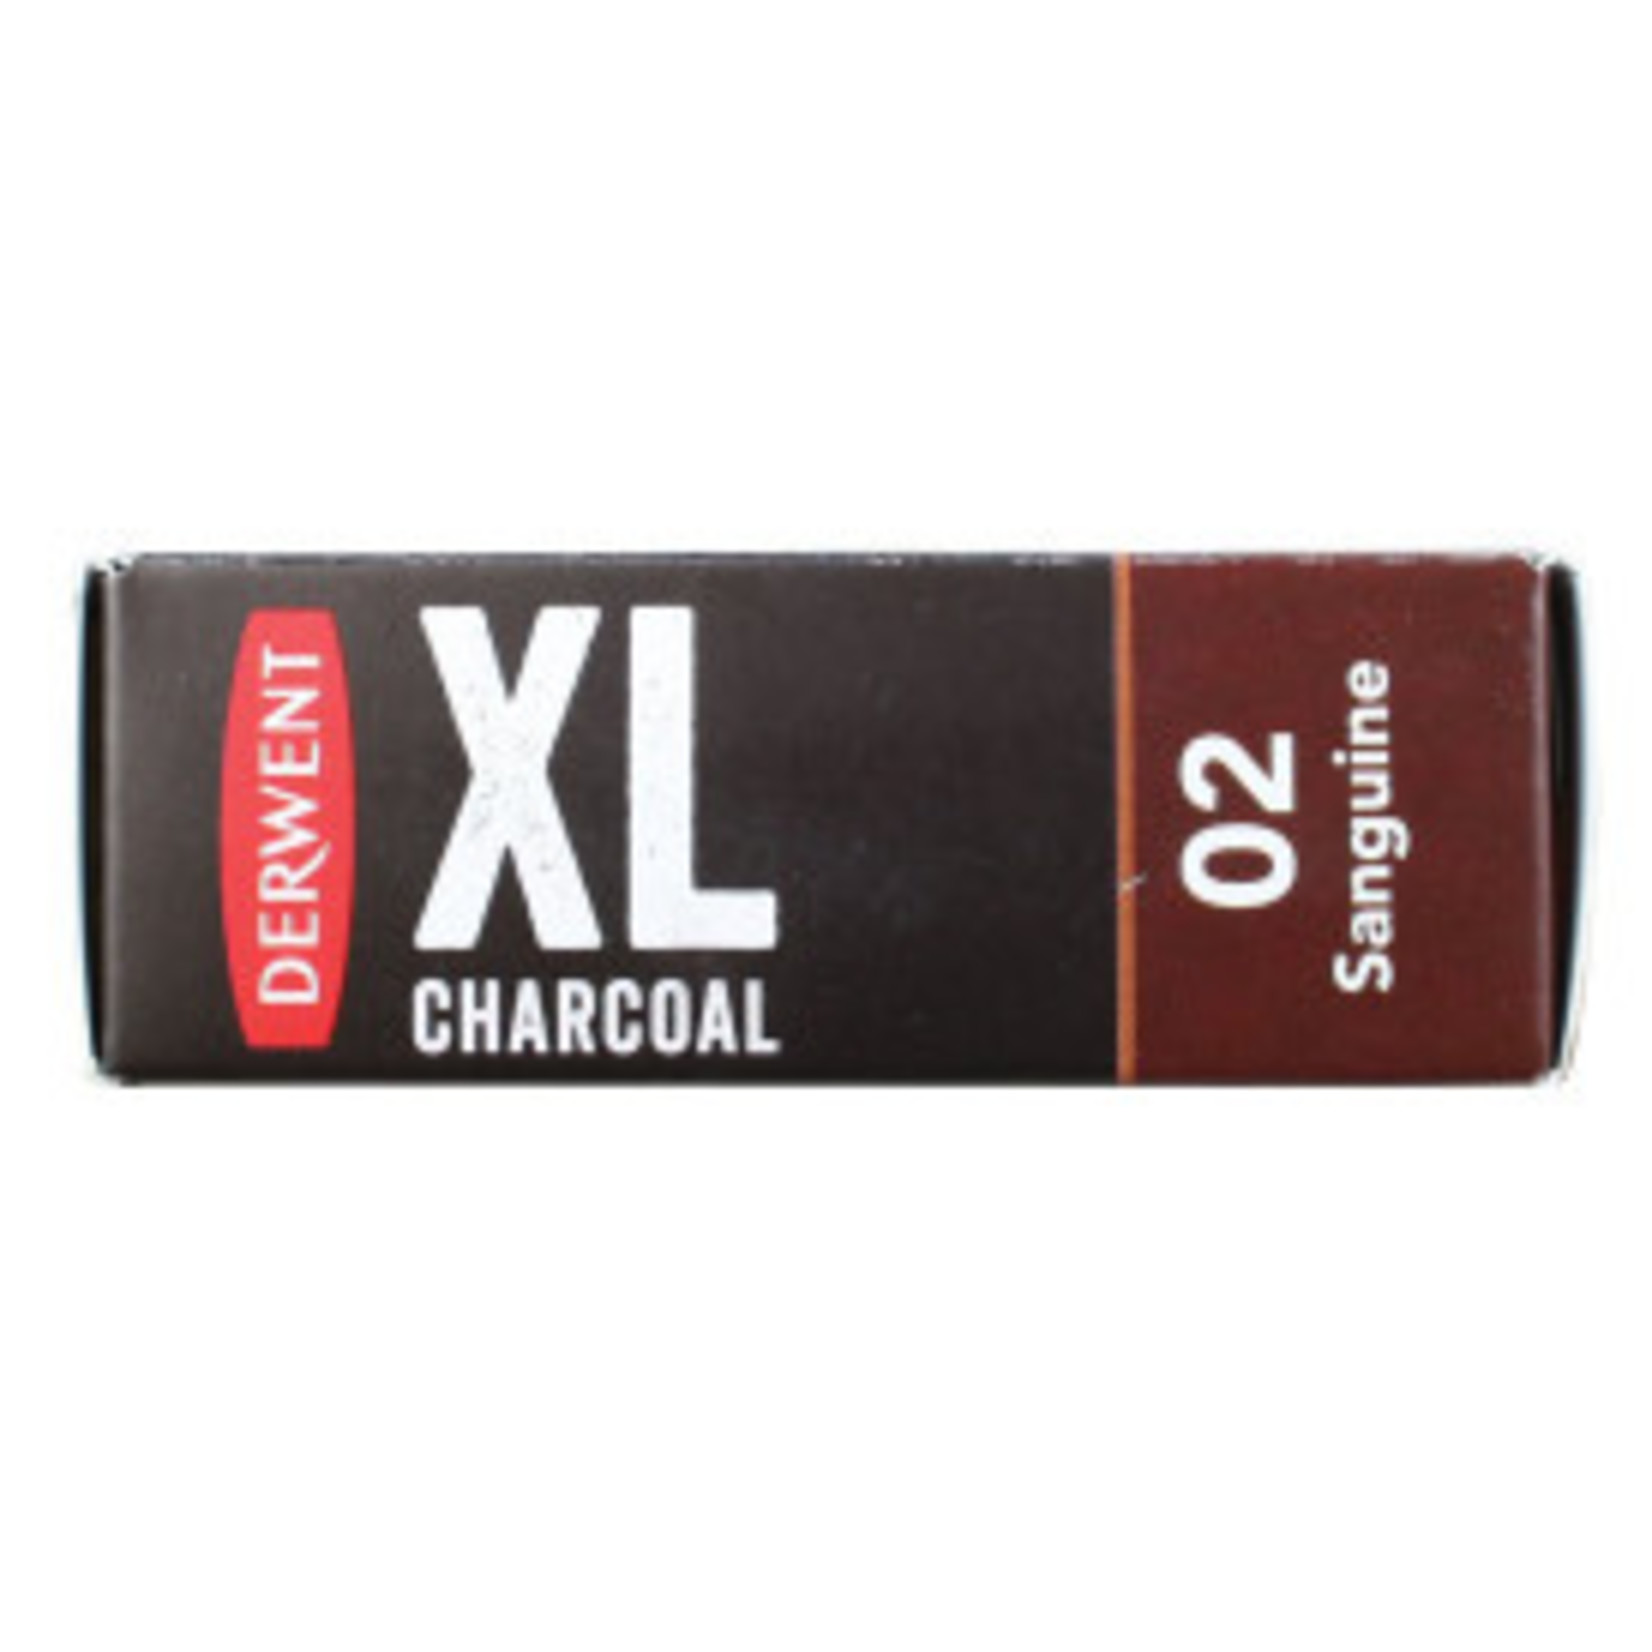 DERWENT XL CHARCOAL 02 SANGUINE